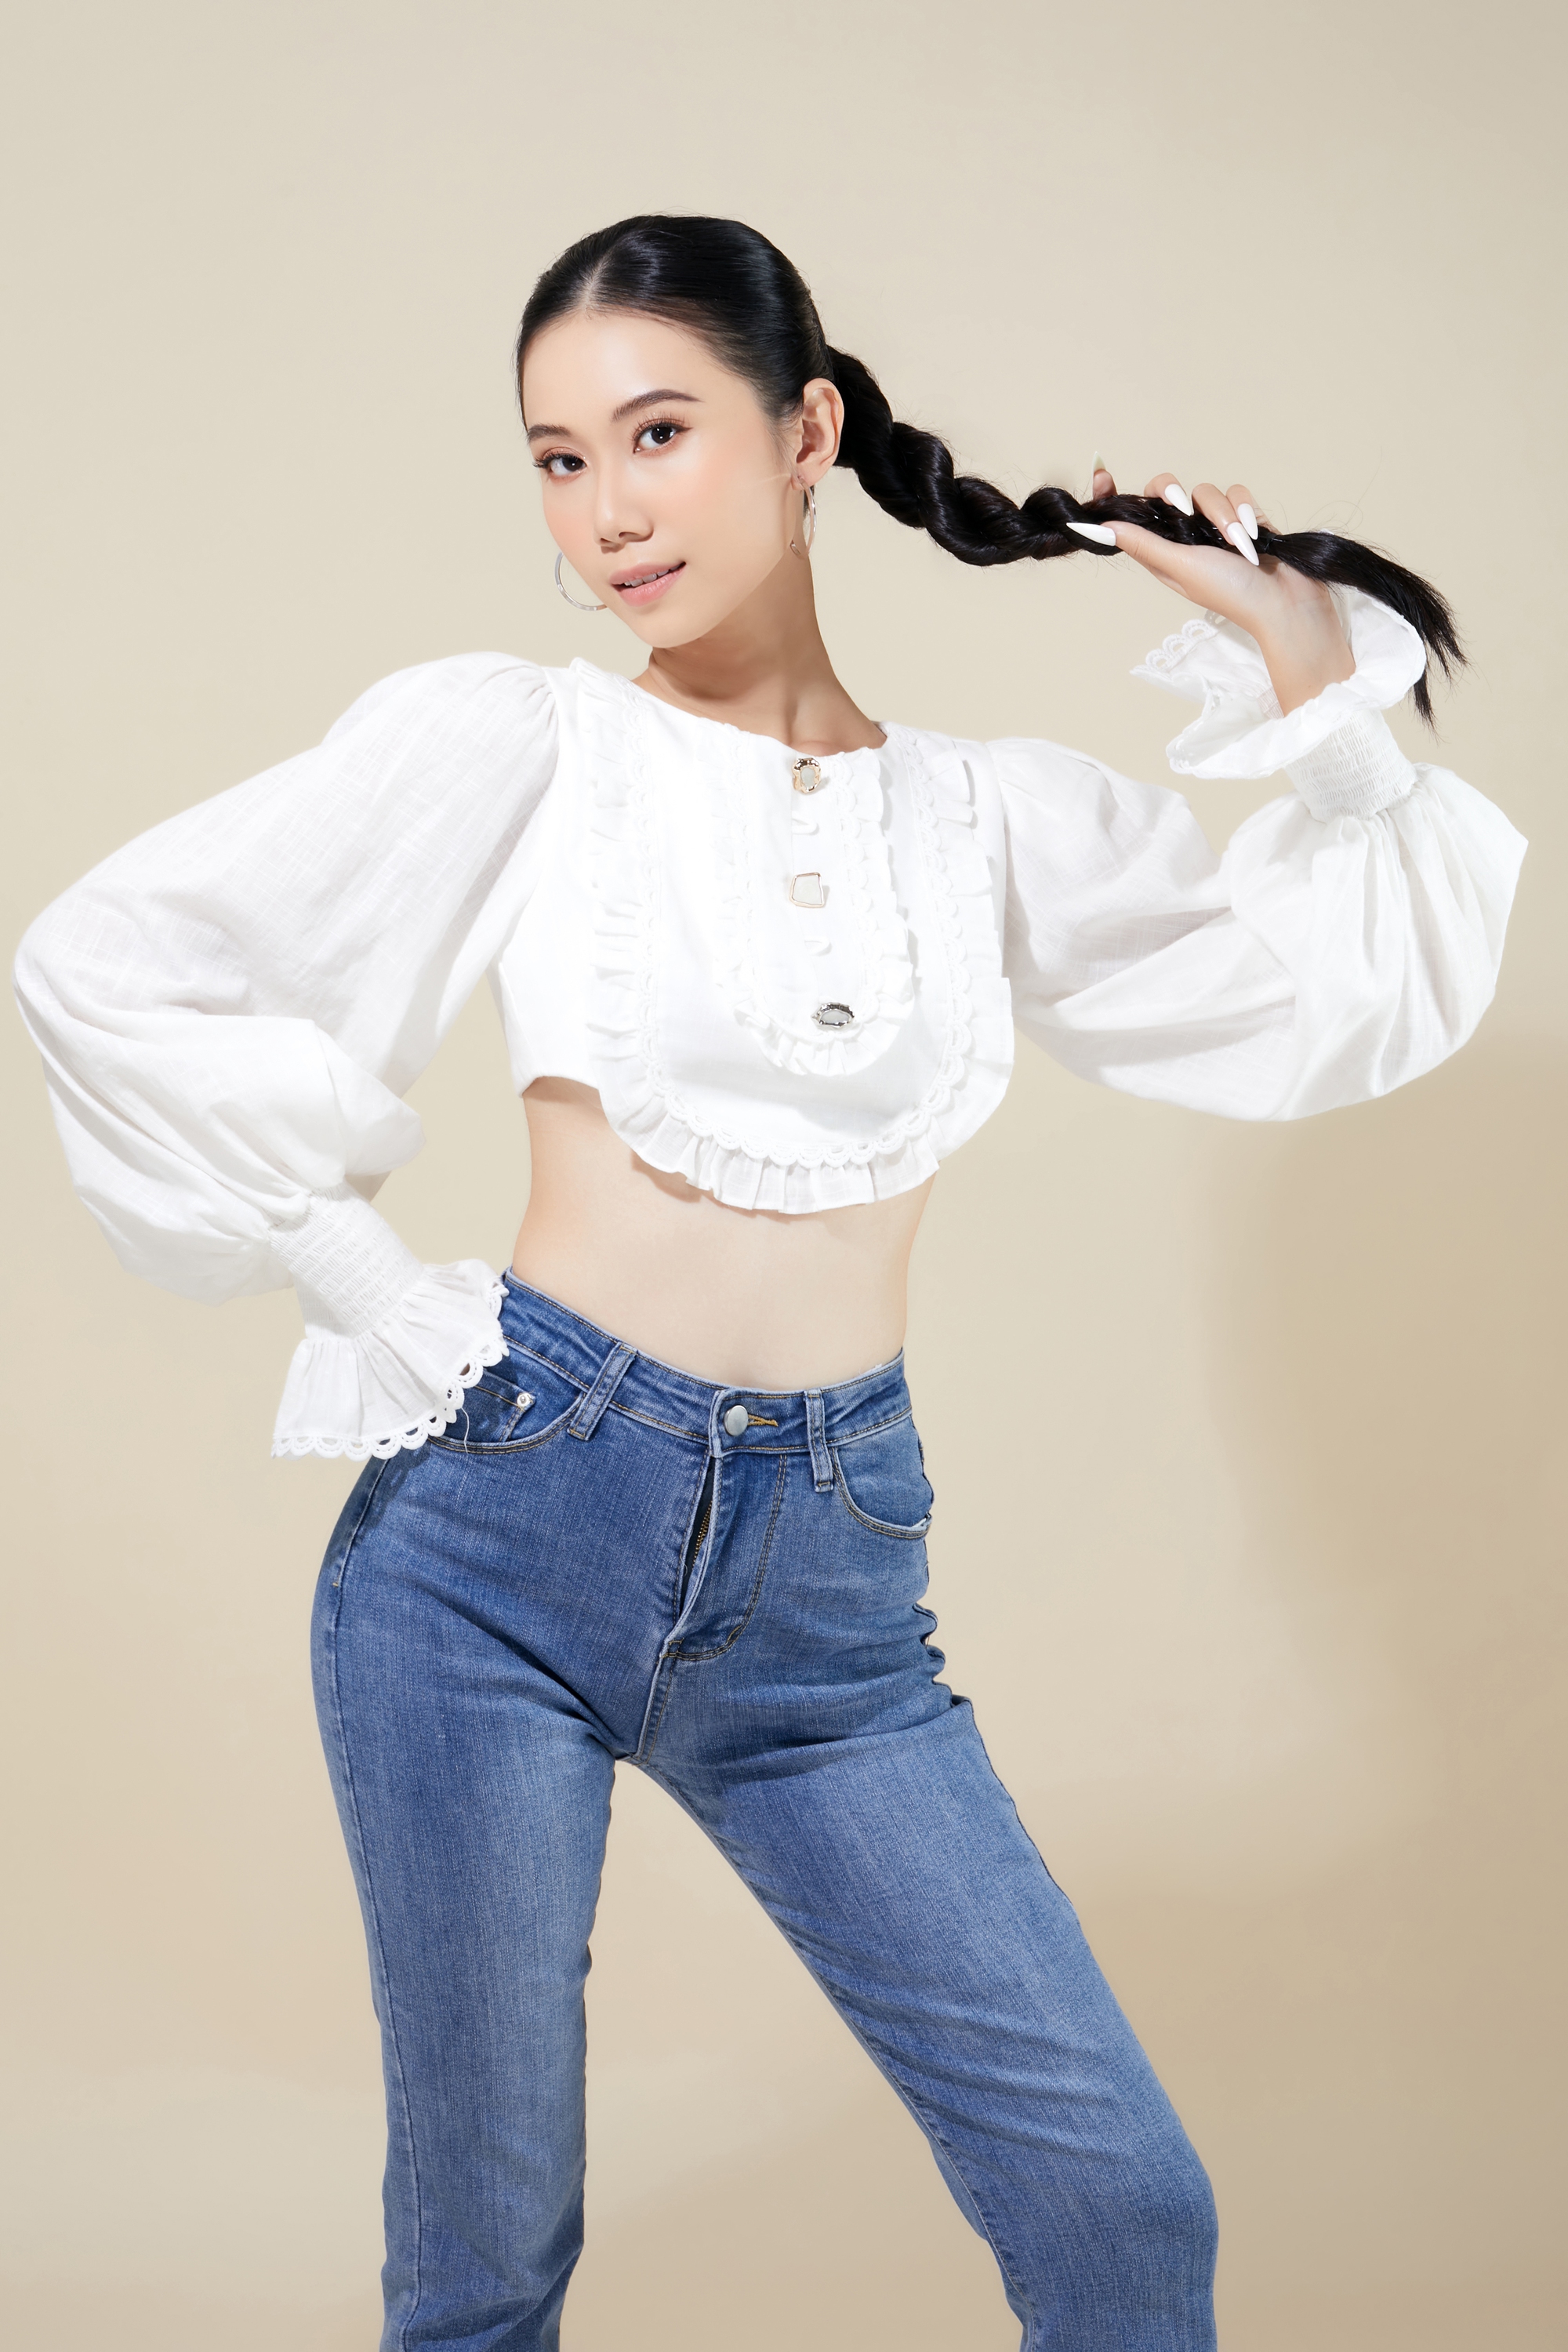 Diện mạo người đẹp Việt Nam dự thi Hoa hậu Sinh viên Thế giới - Ảnh 5.